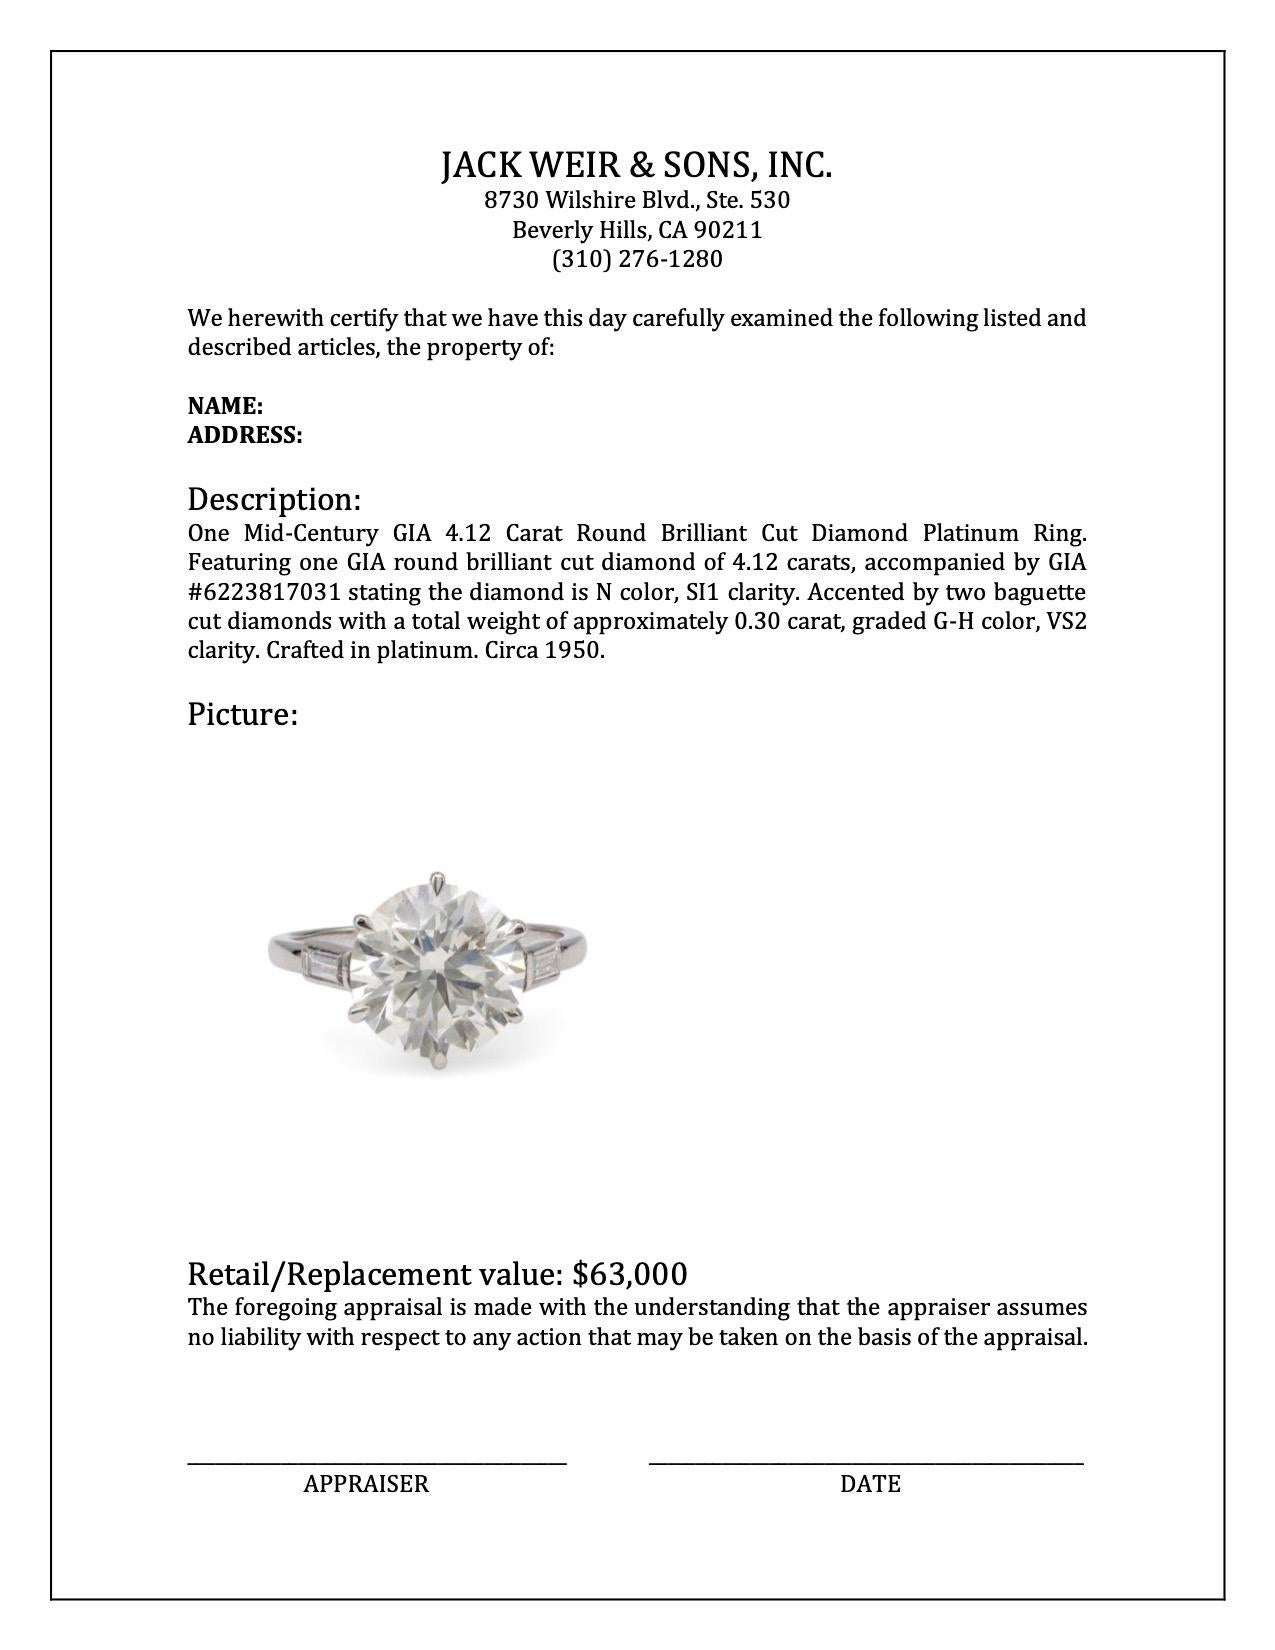 Mid-Century GIA 4.12 Carat Round Brilliant Cut Diamond Platinum Ring For Sale 2